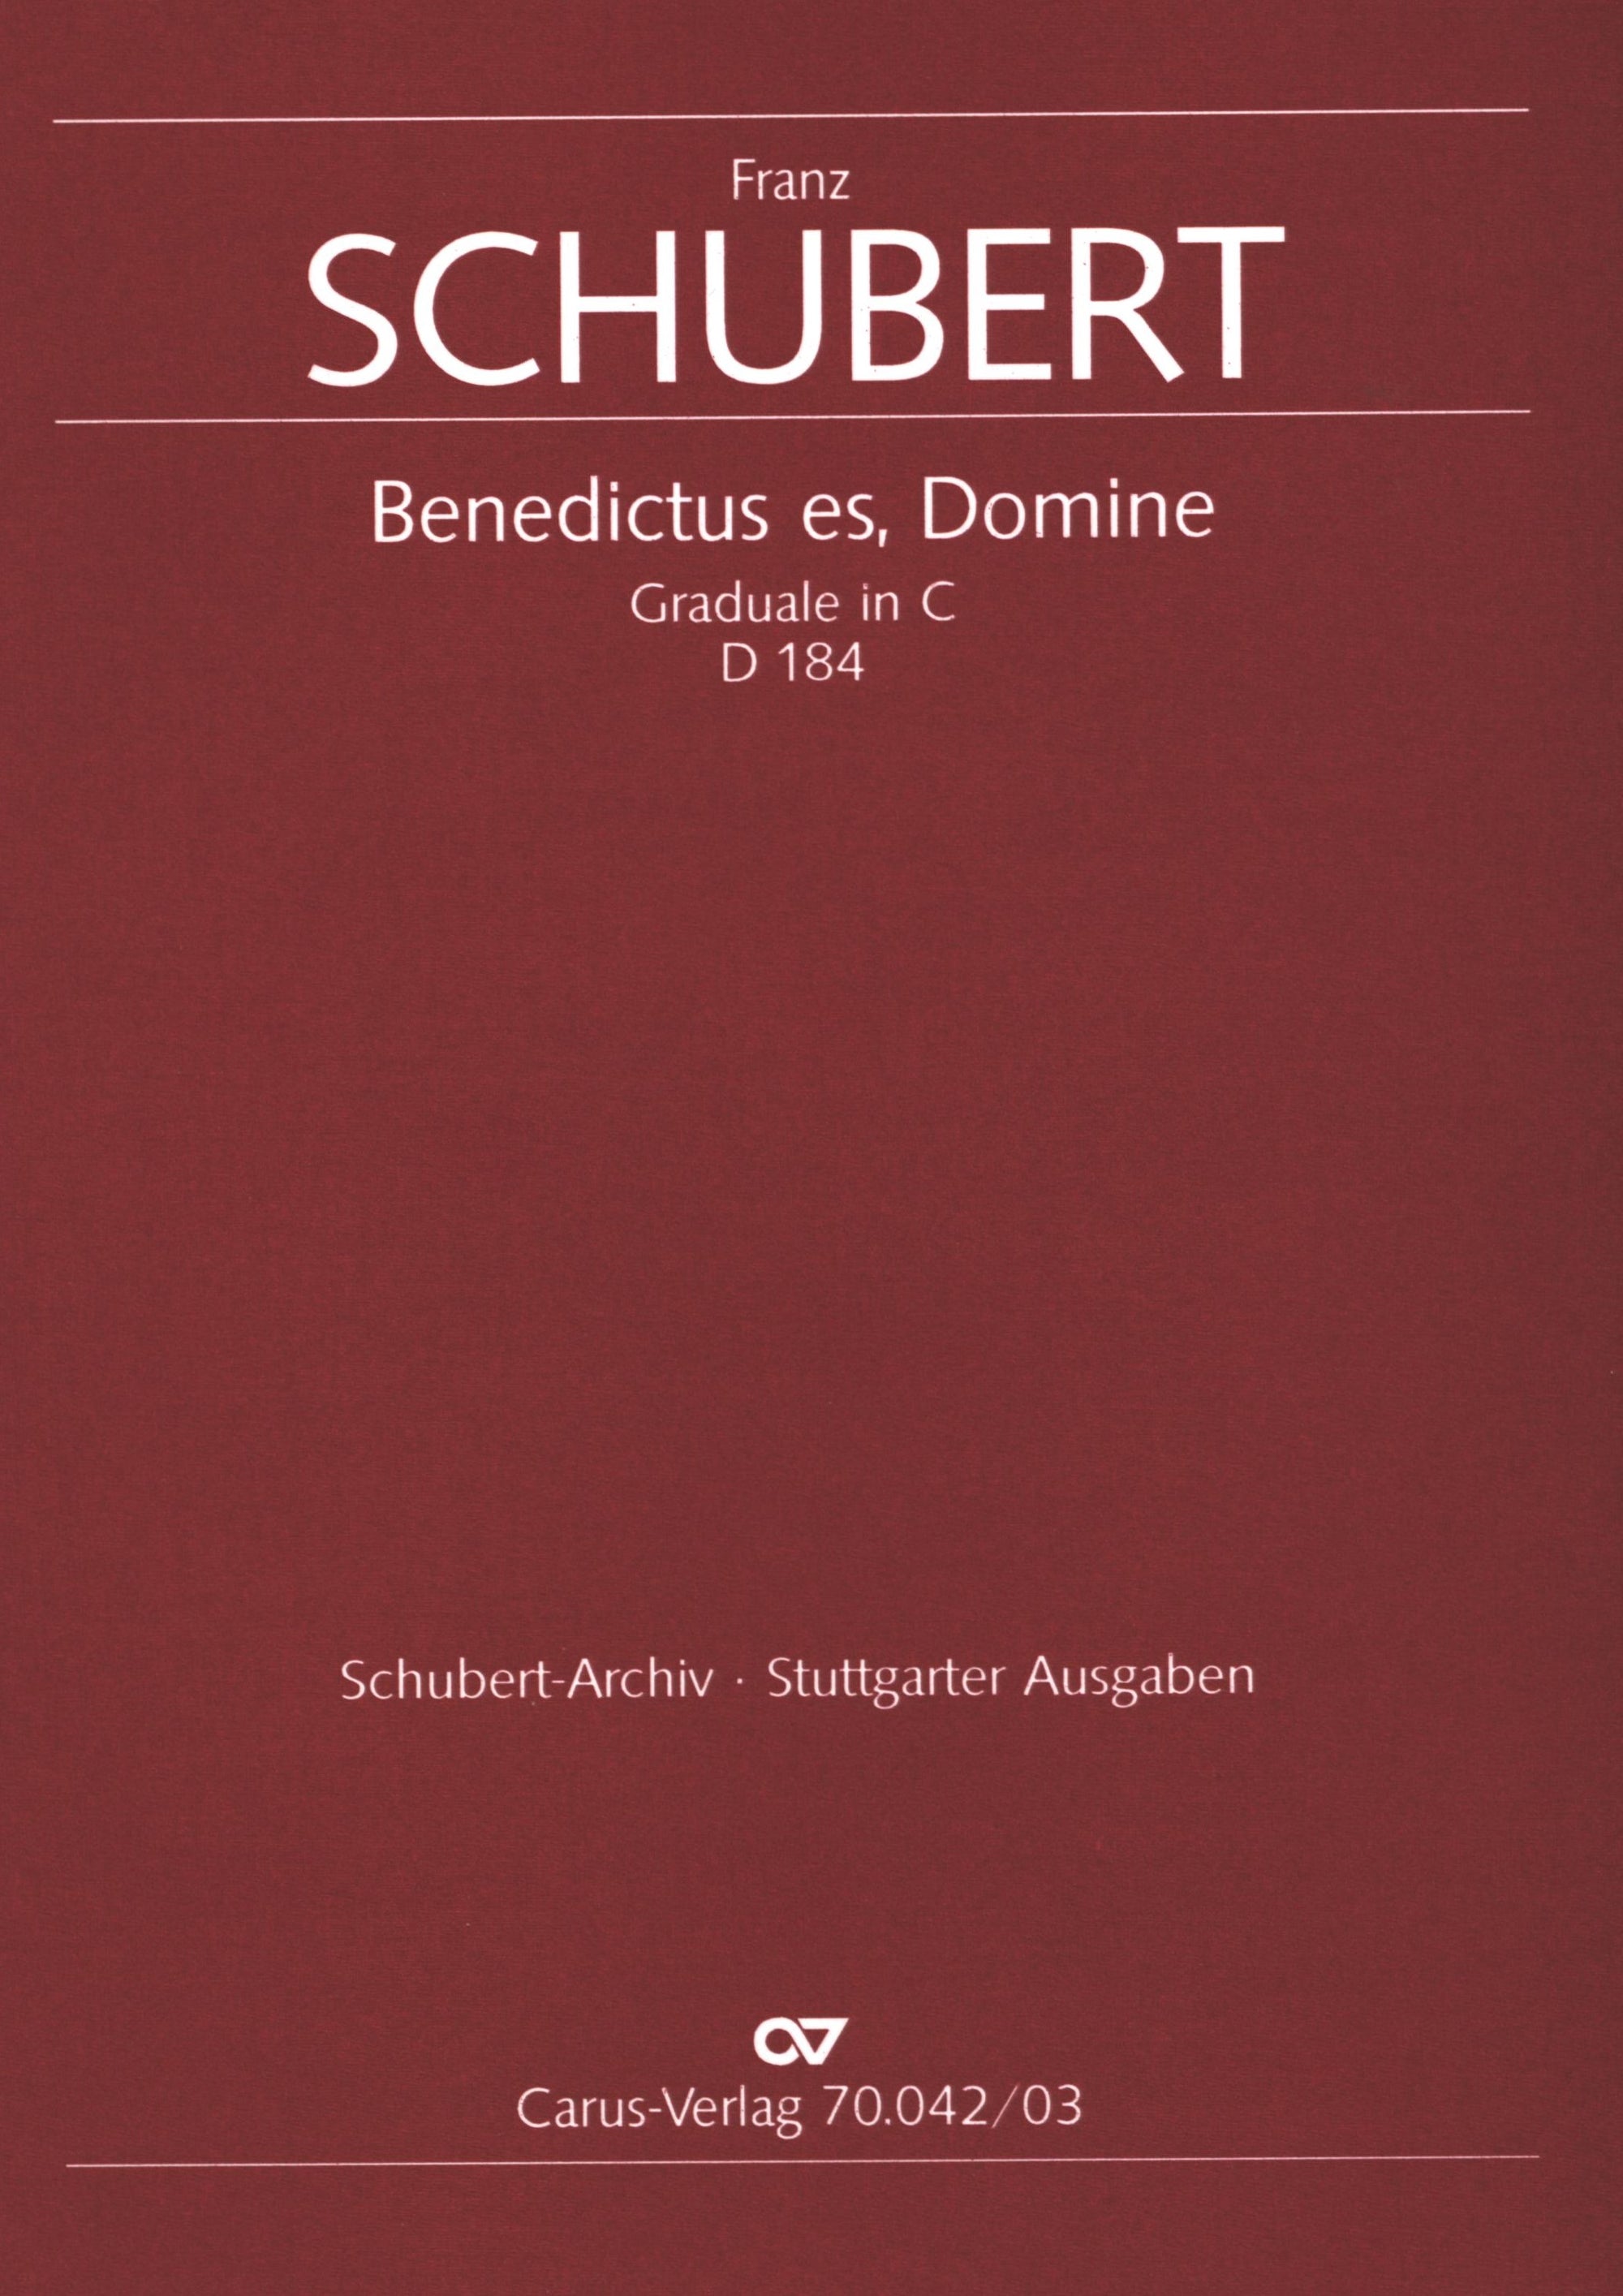 Schubert: Graduale in C Major, D 184, Op. 150 posth.